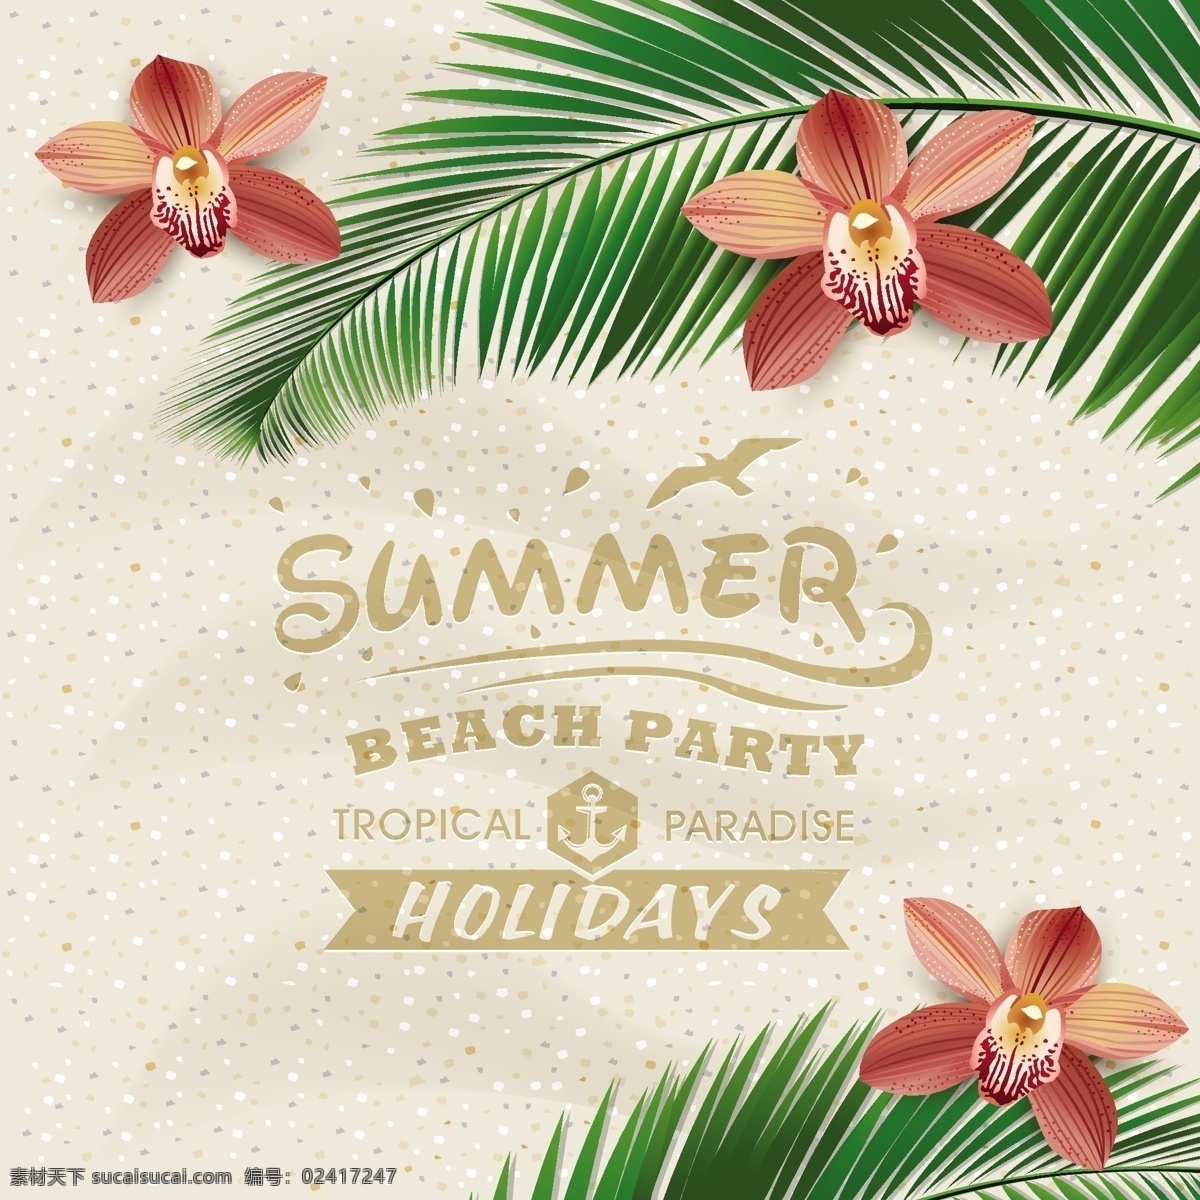 夏日 沙滩 度假 海报 矢量 海边 海鸥 蝴蝶兰 矢量图 椰子树 其他海报设计